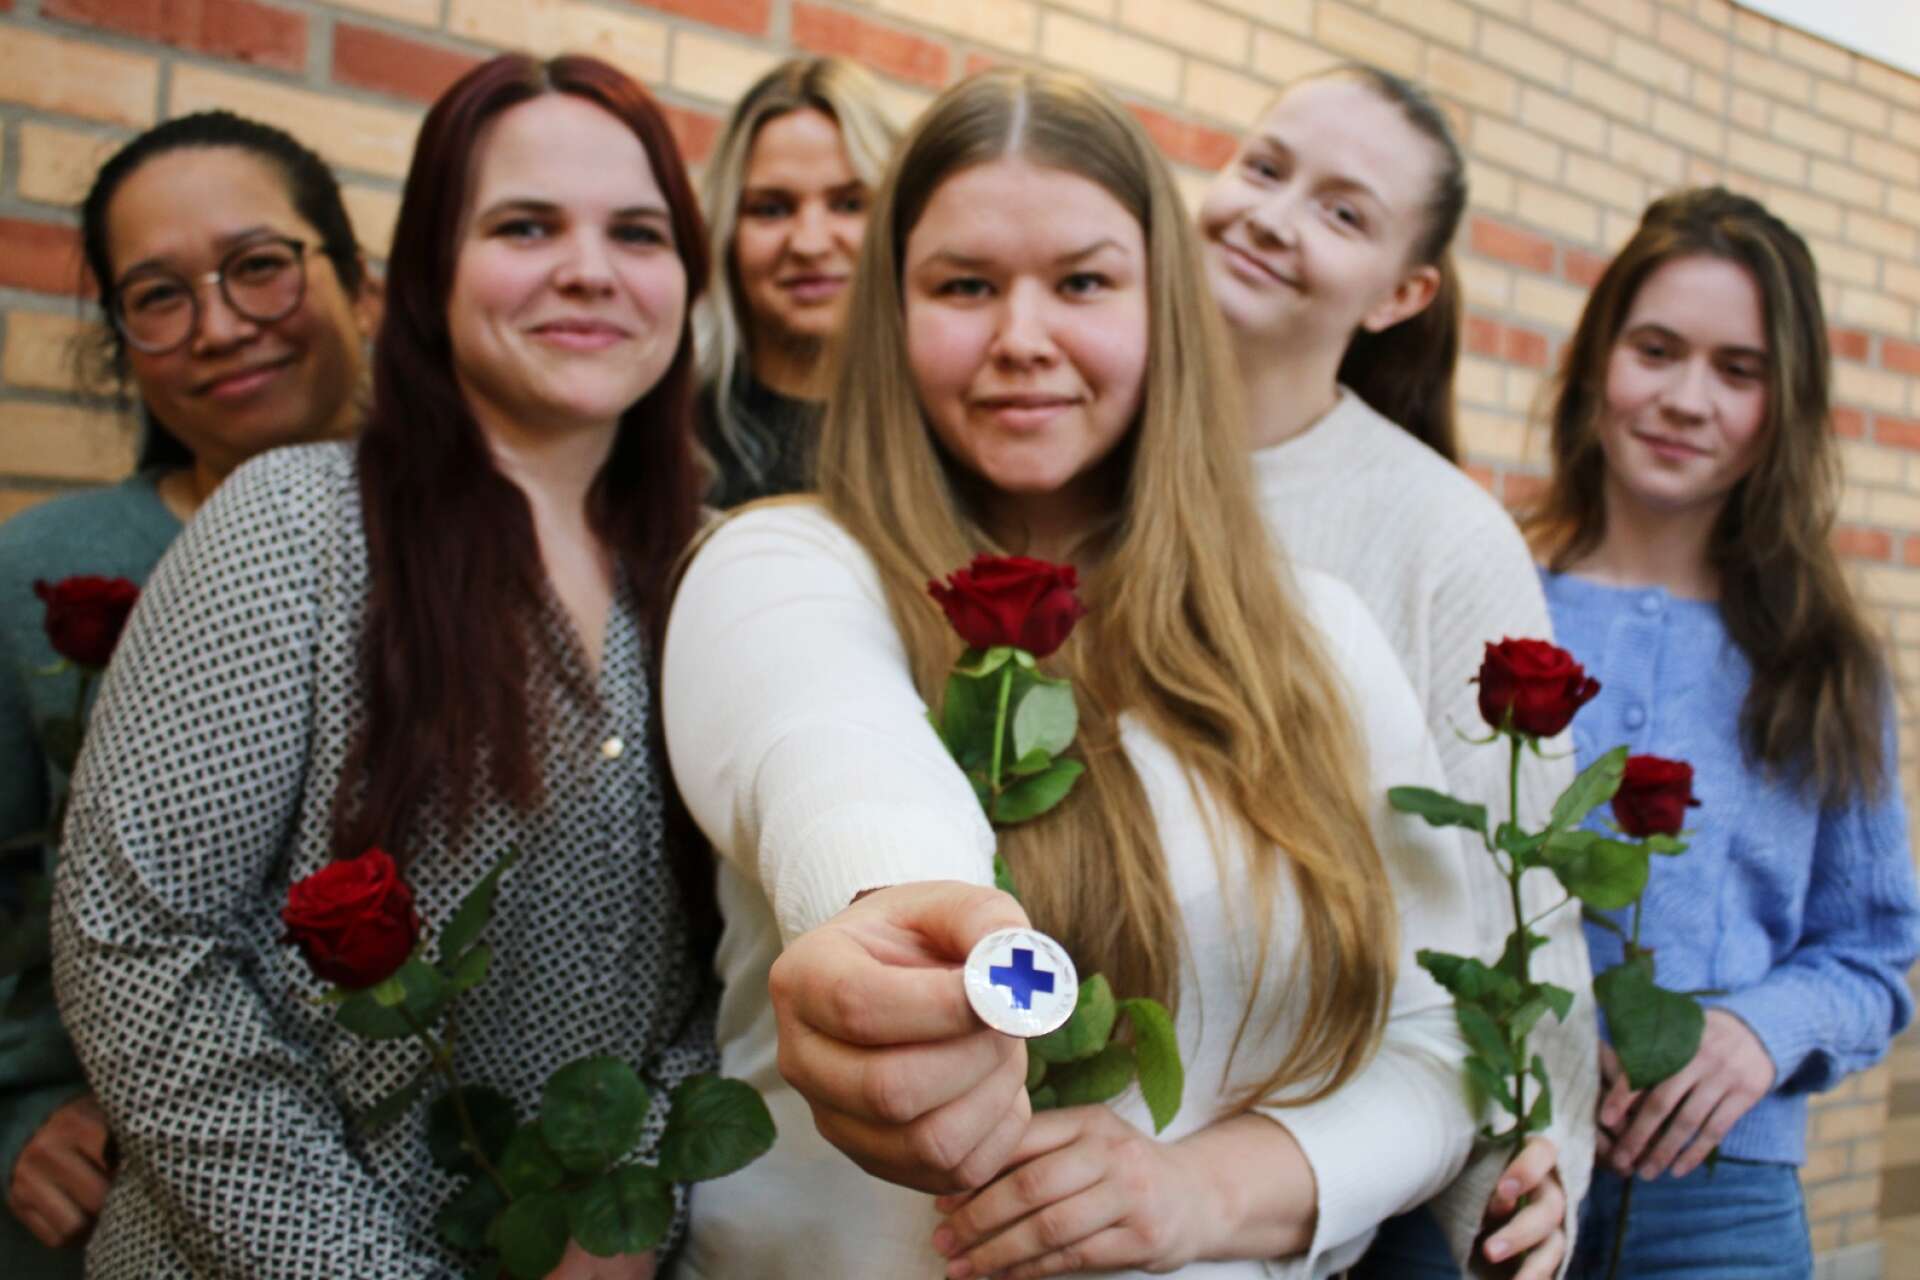 Efter ett och ett halvt års studier är sju tjejer nu examinerade undersköterskor i Säffle. De är dessutom de första att examineras enligt den nya kursplanen, som innebär en bredare yrkeskompetens.